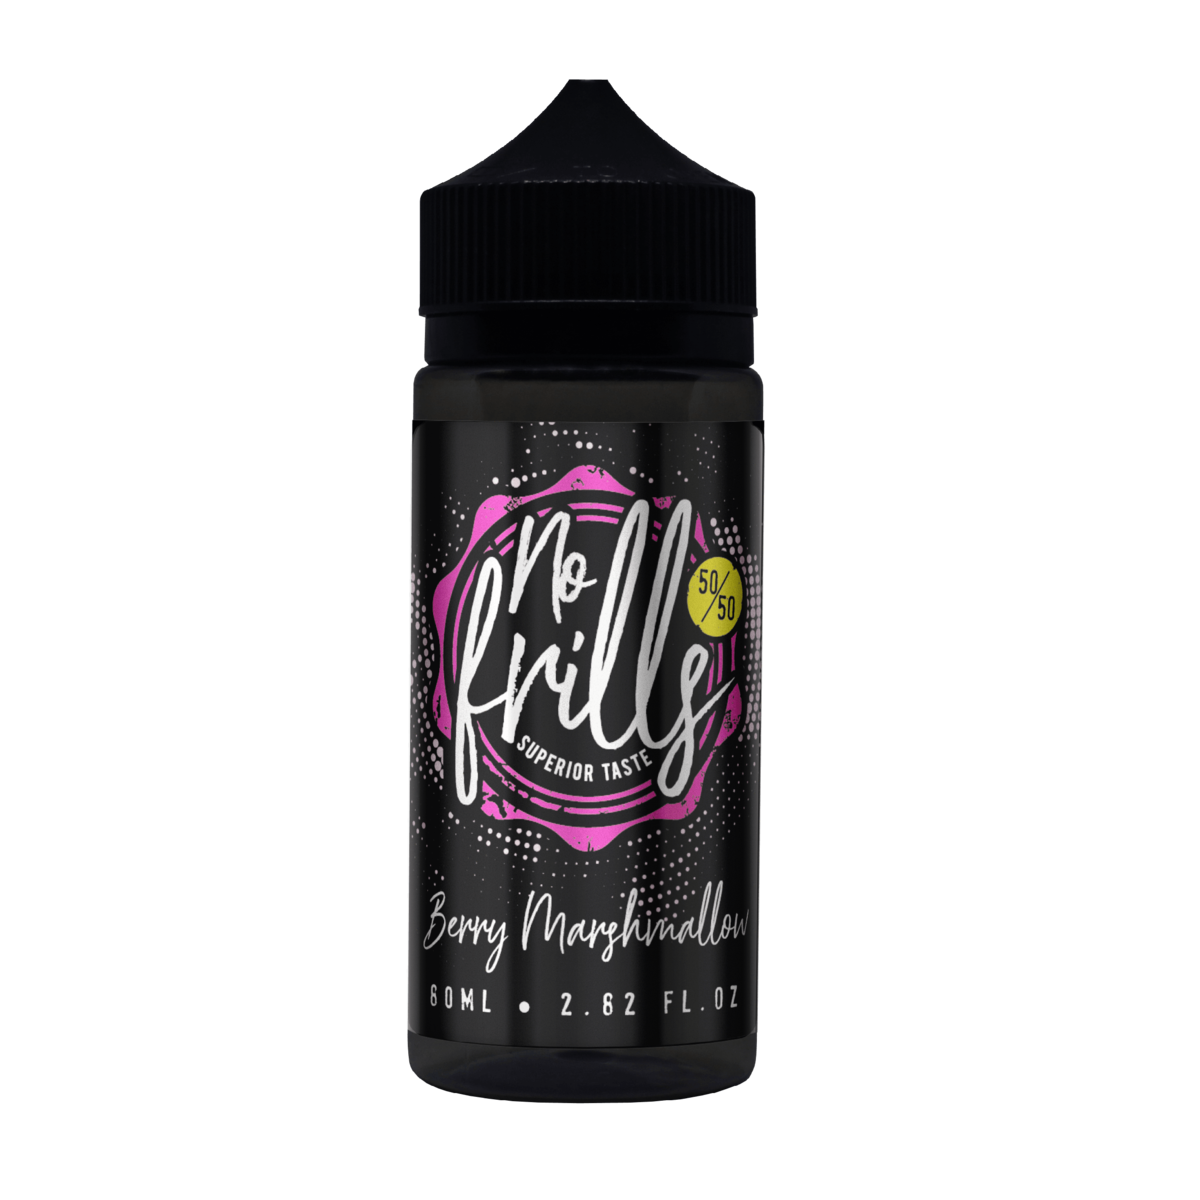 Berry Marshmallow E-liquid by No Frills 80ml Shortfill